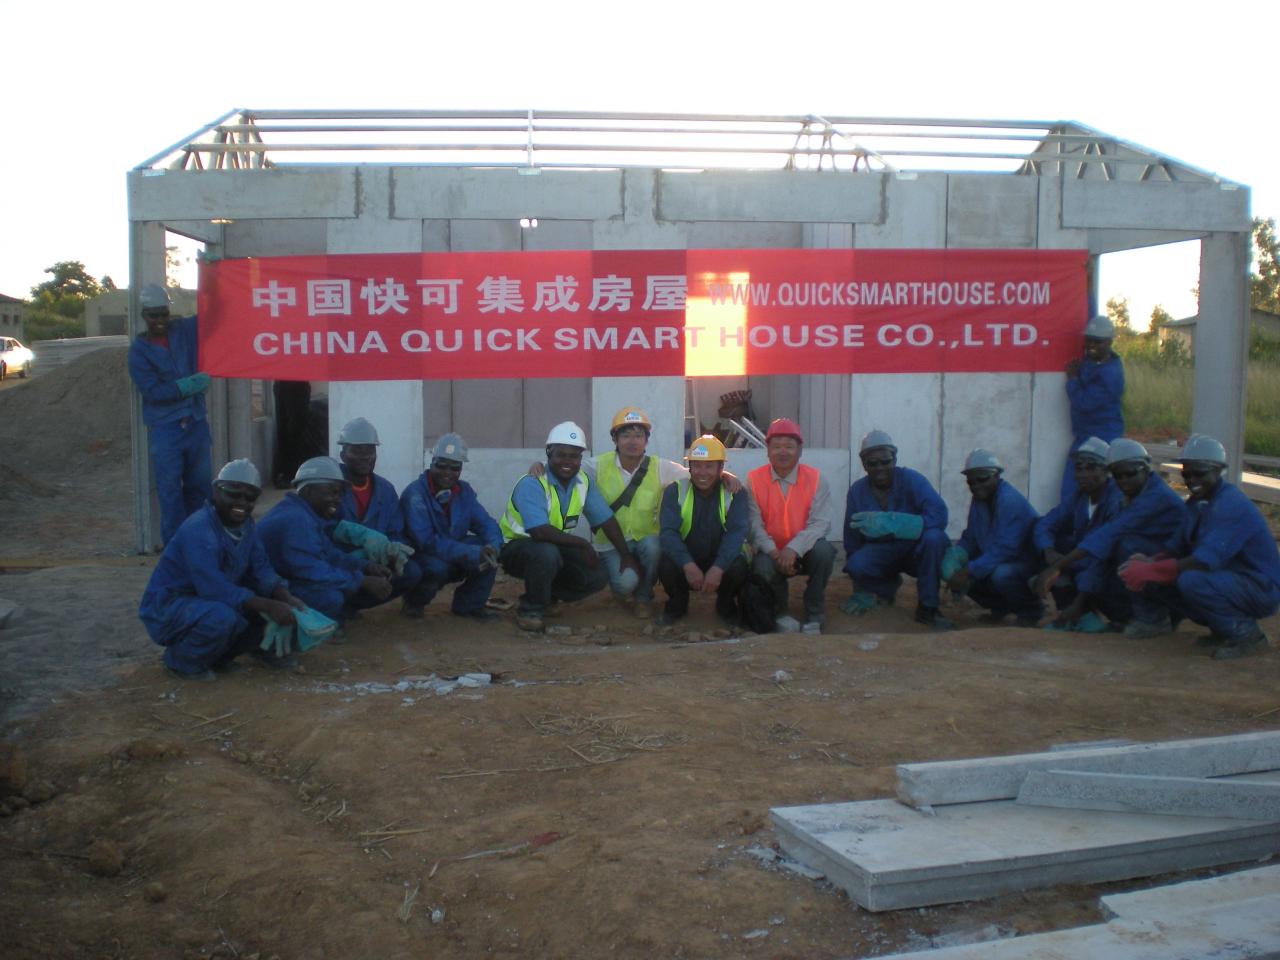 Dự án cải tạo nhà ở Zambia